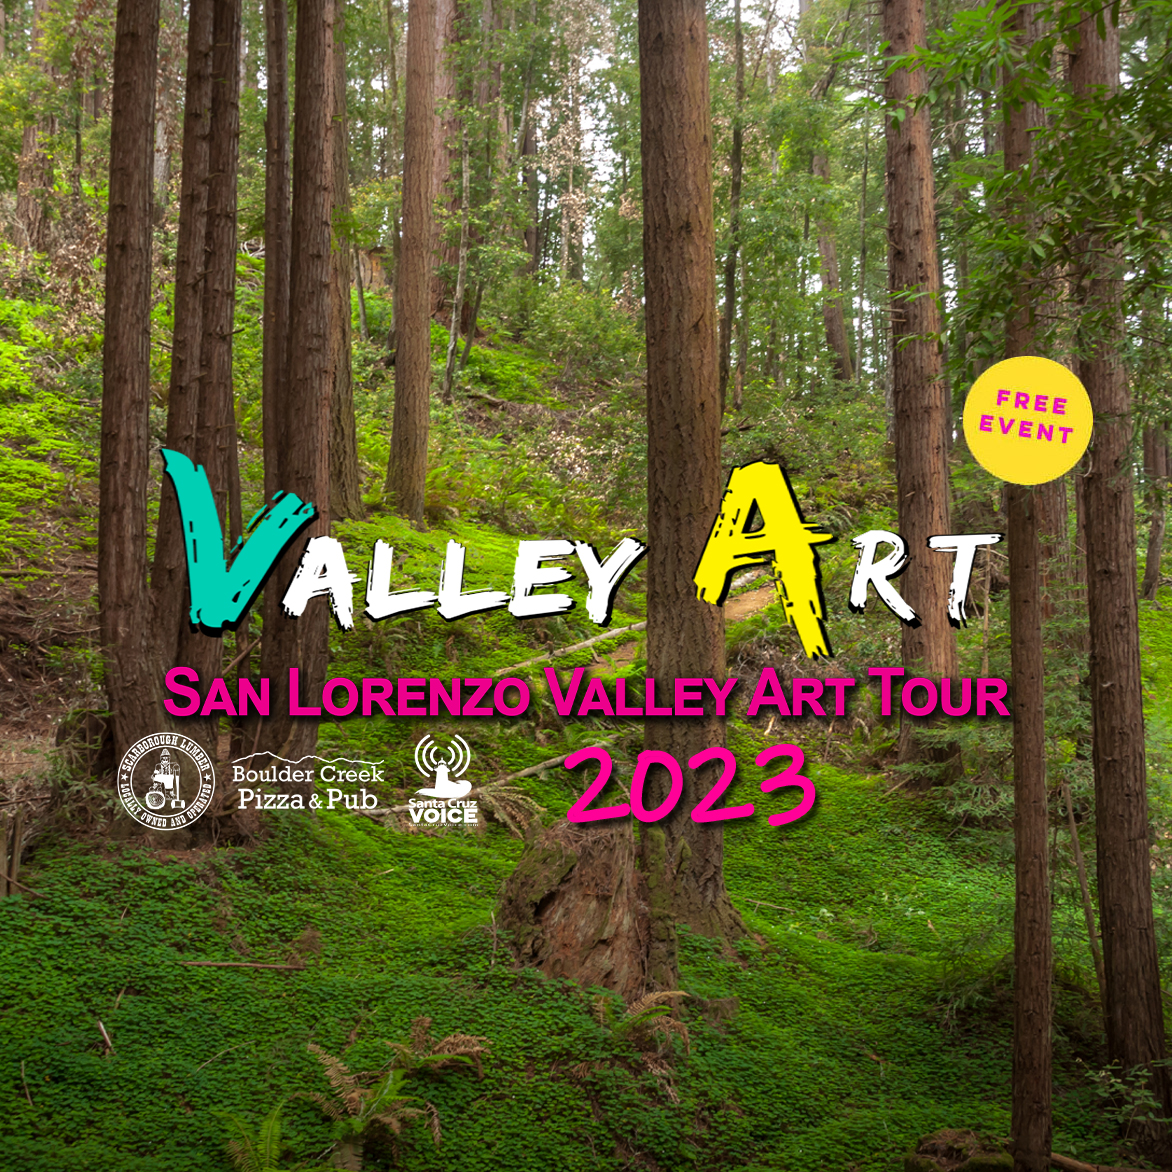 Valley Art Tour